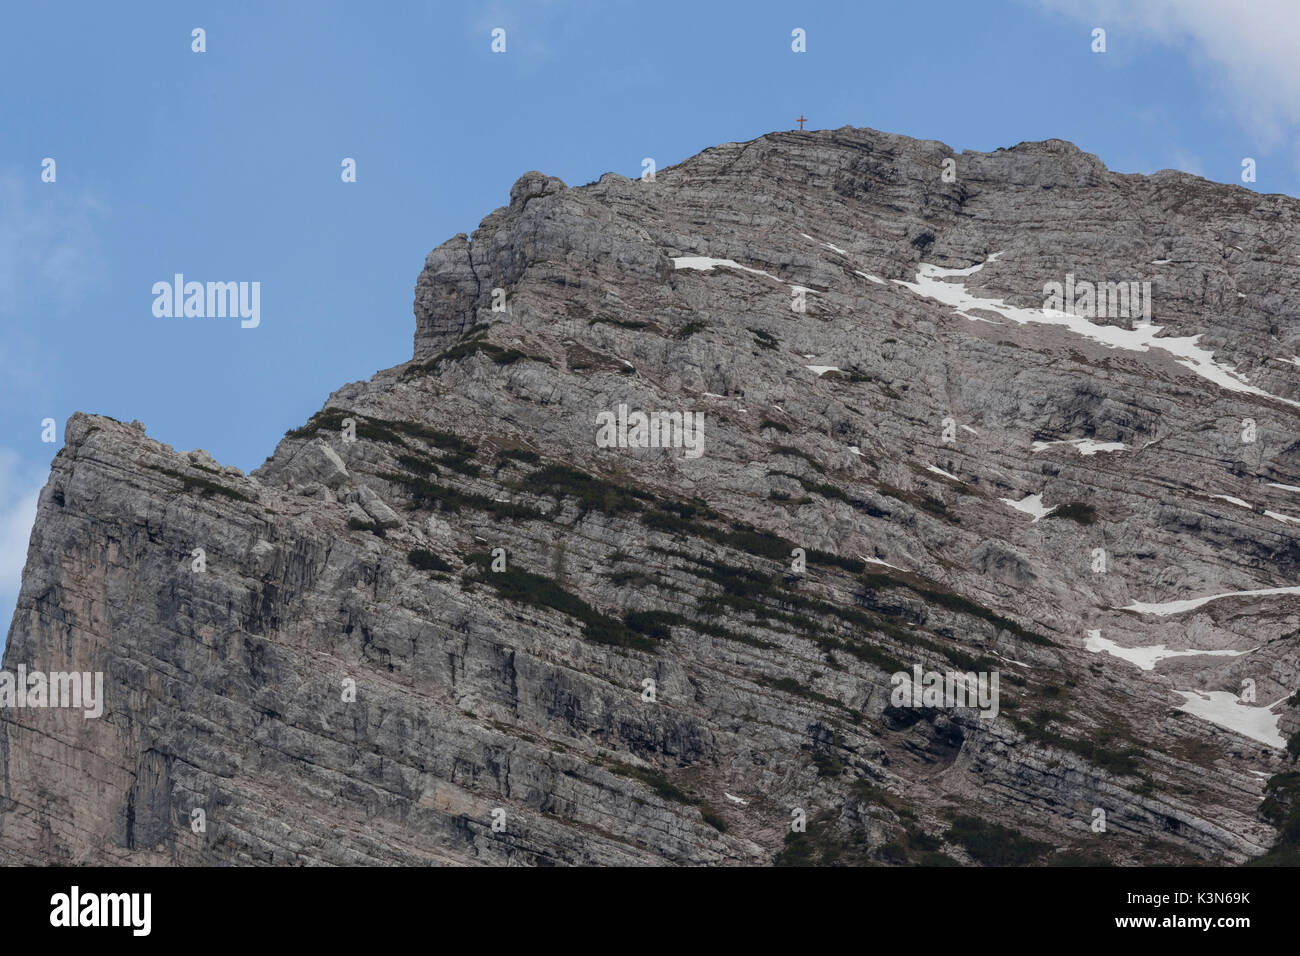 Le côté nord du Piz de Mezodi', également appelé Zima de la Cros (sommet de la croix) Monti del Sole, Parc National des Dolomites de Belluno Banque D'Images